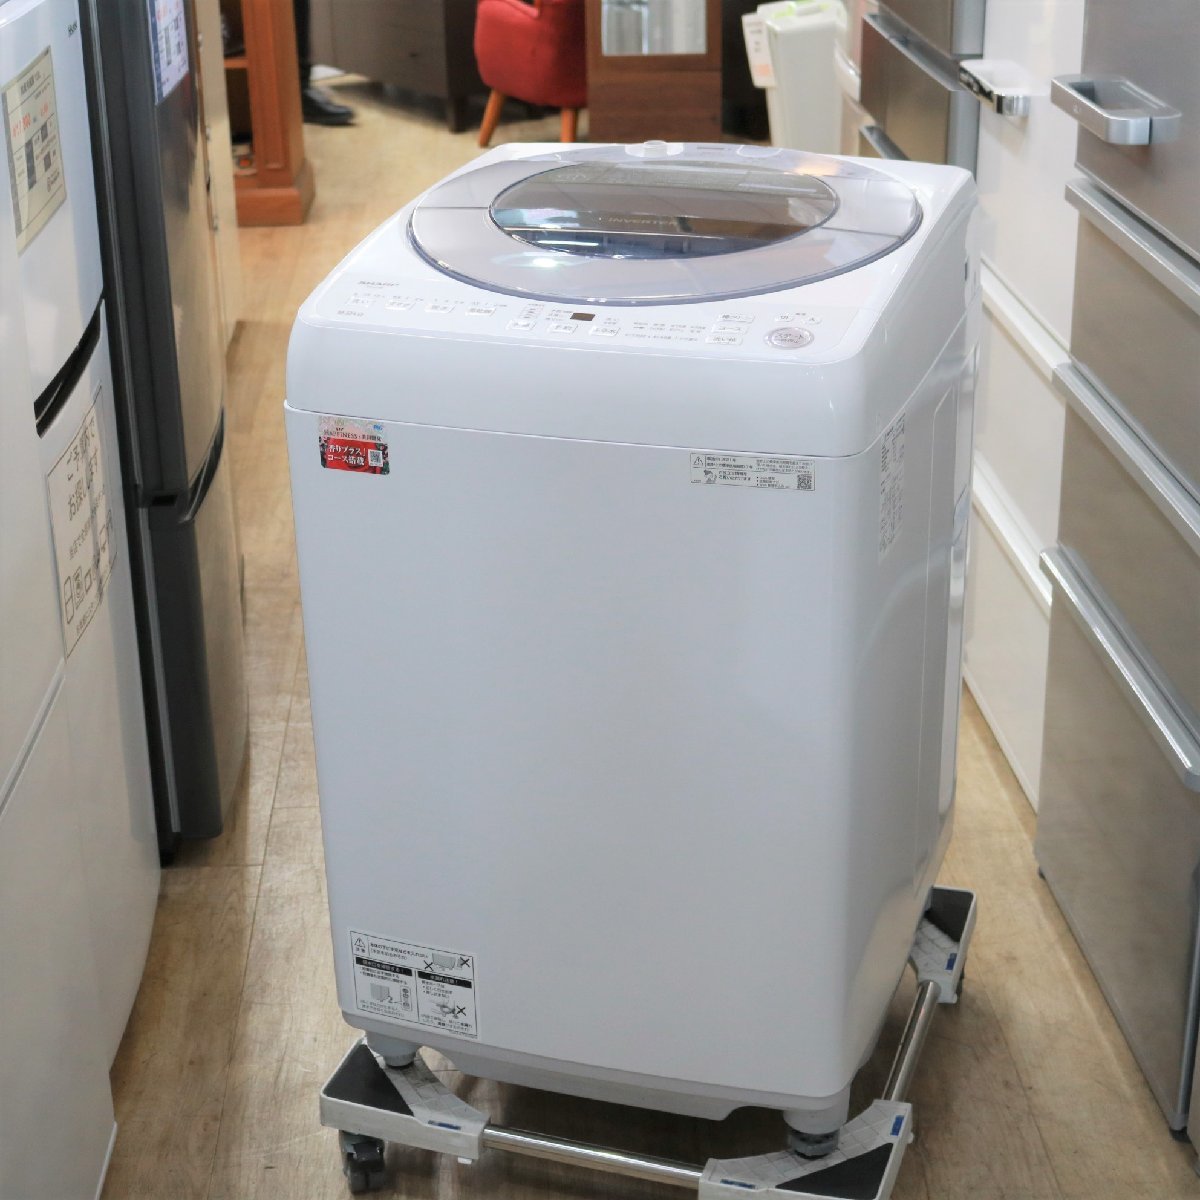 東京都武蔵野市にて シャープ 洗濯機 ES-GV8F-S 2021年製 を出張買取させて頂きました。